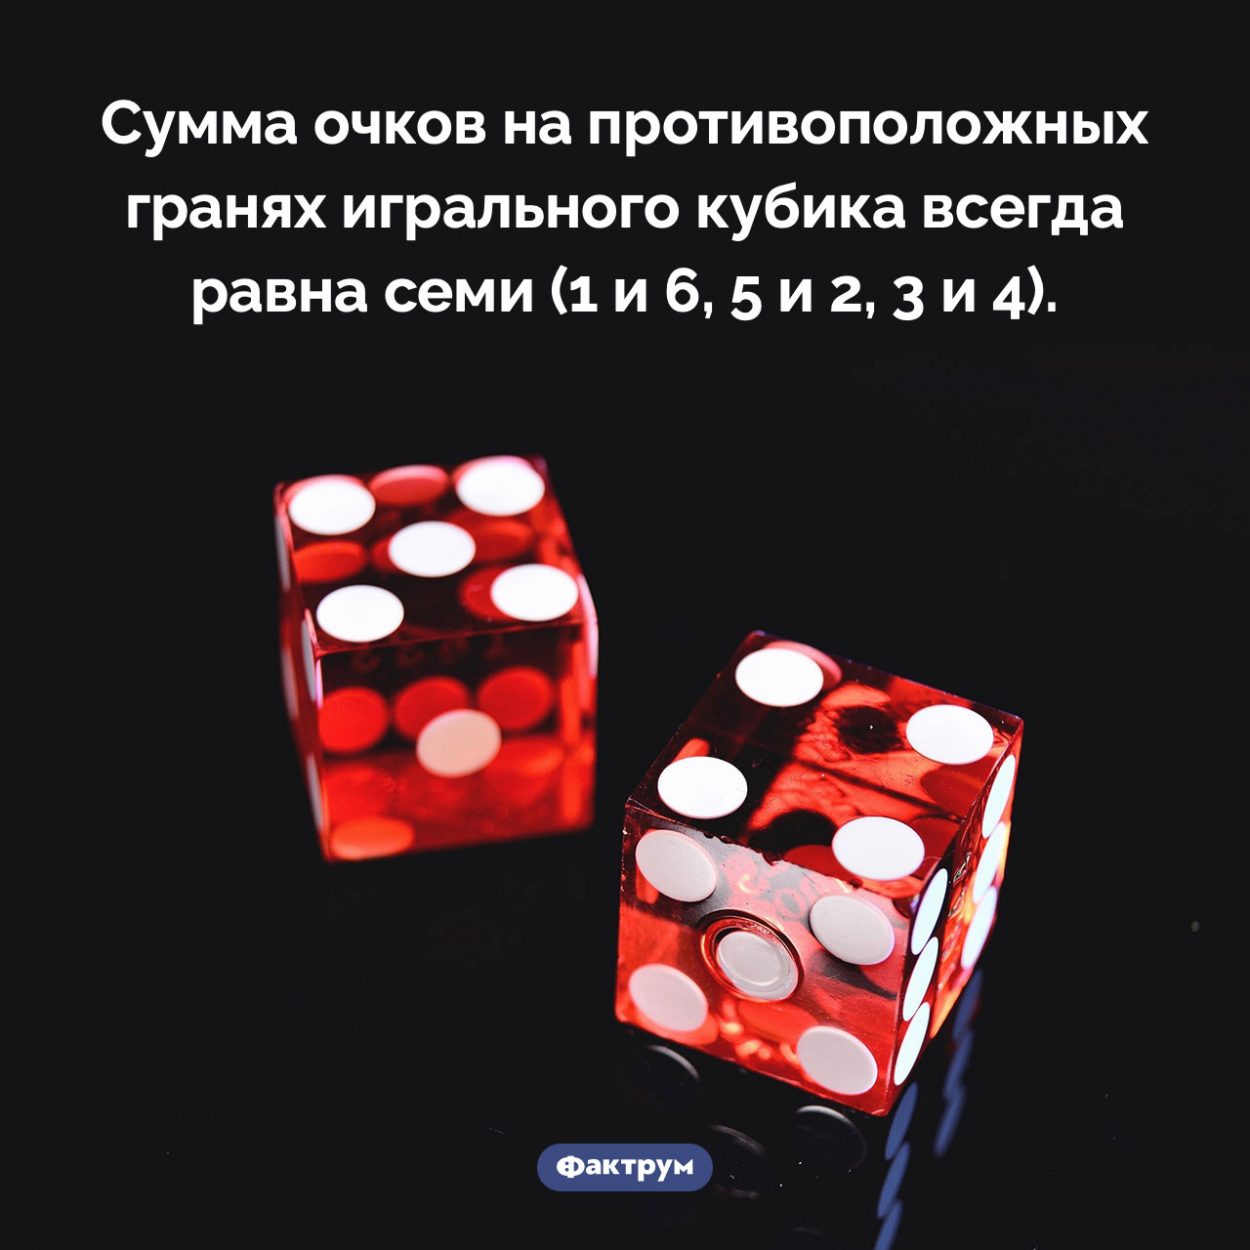 Сумма очков на противоположных гранях игрального кубика. Сумма очков на противоположных гранях игрального кубика всегда равна семи (1 и 6, 5 и 2, 3 и 4).